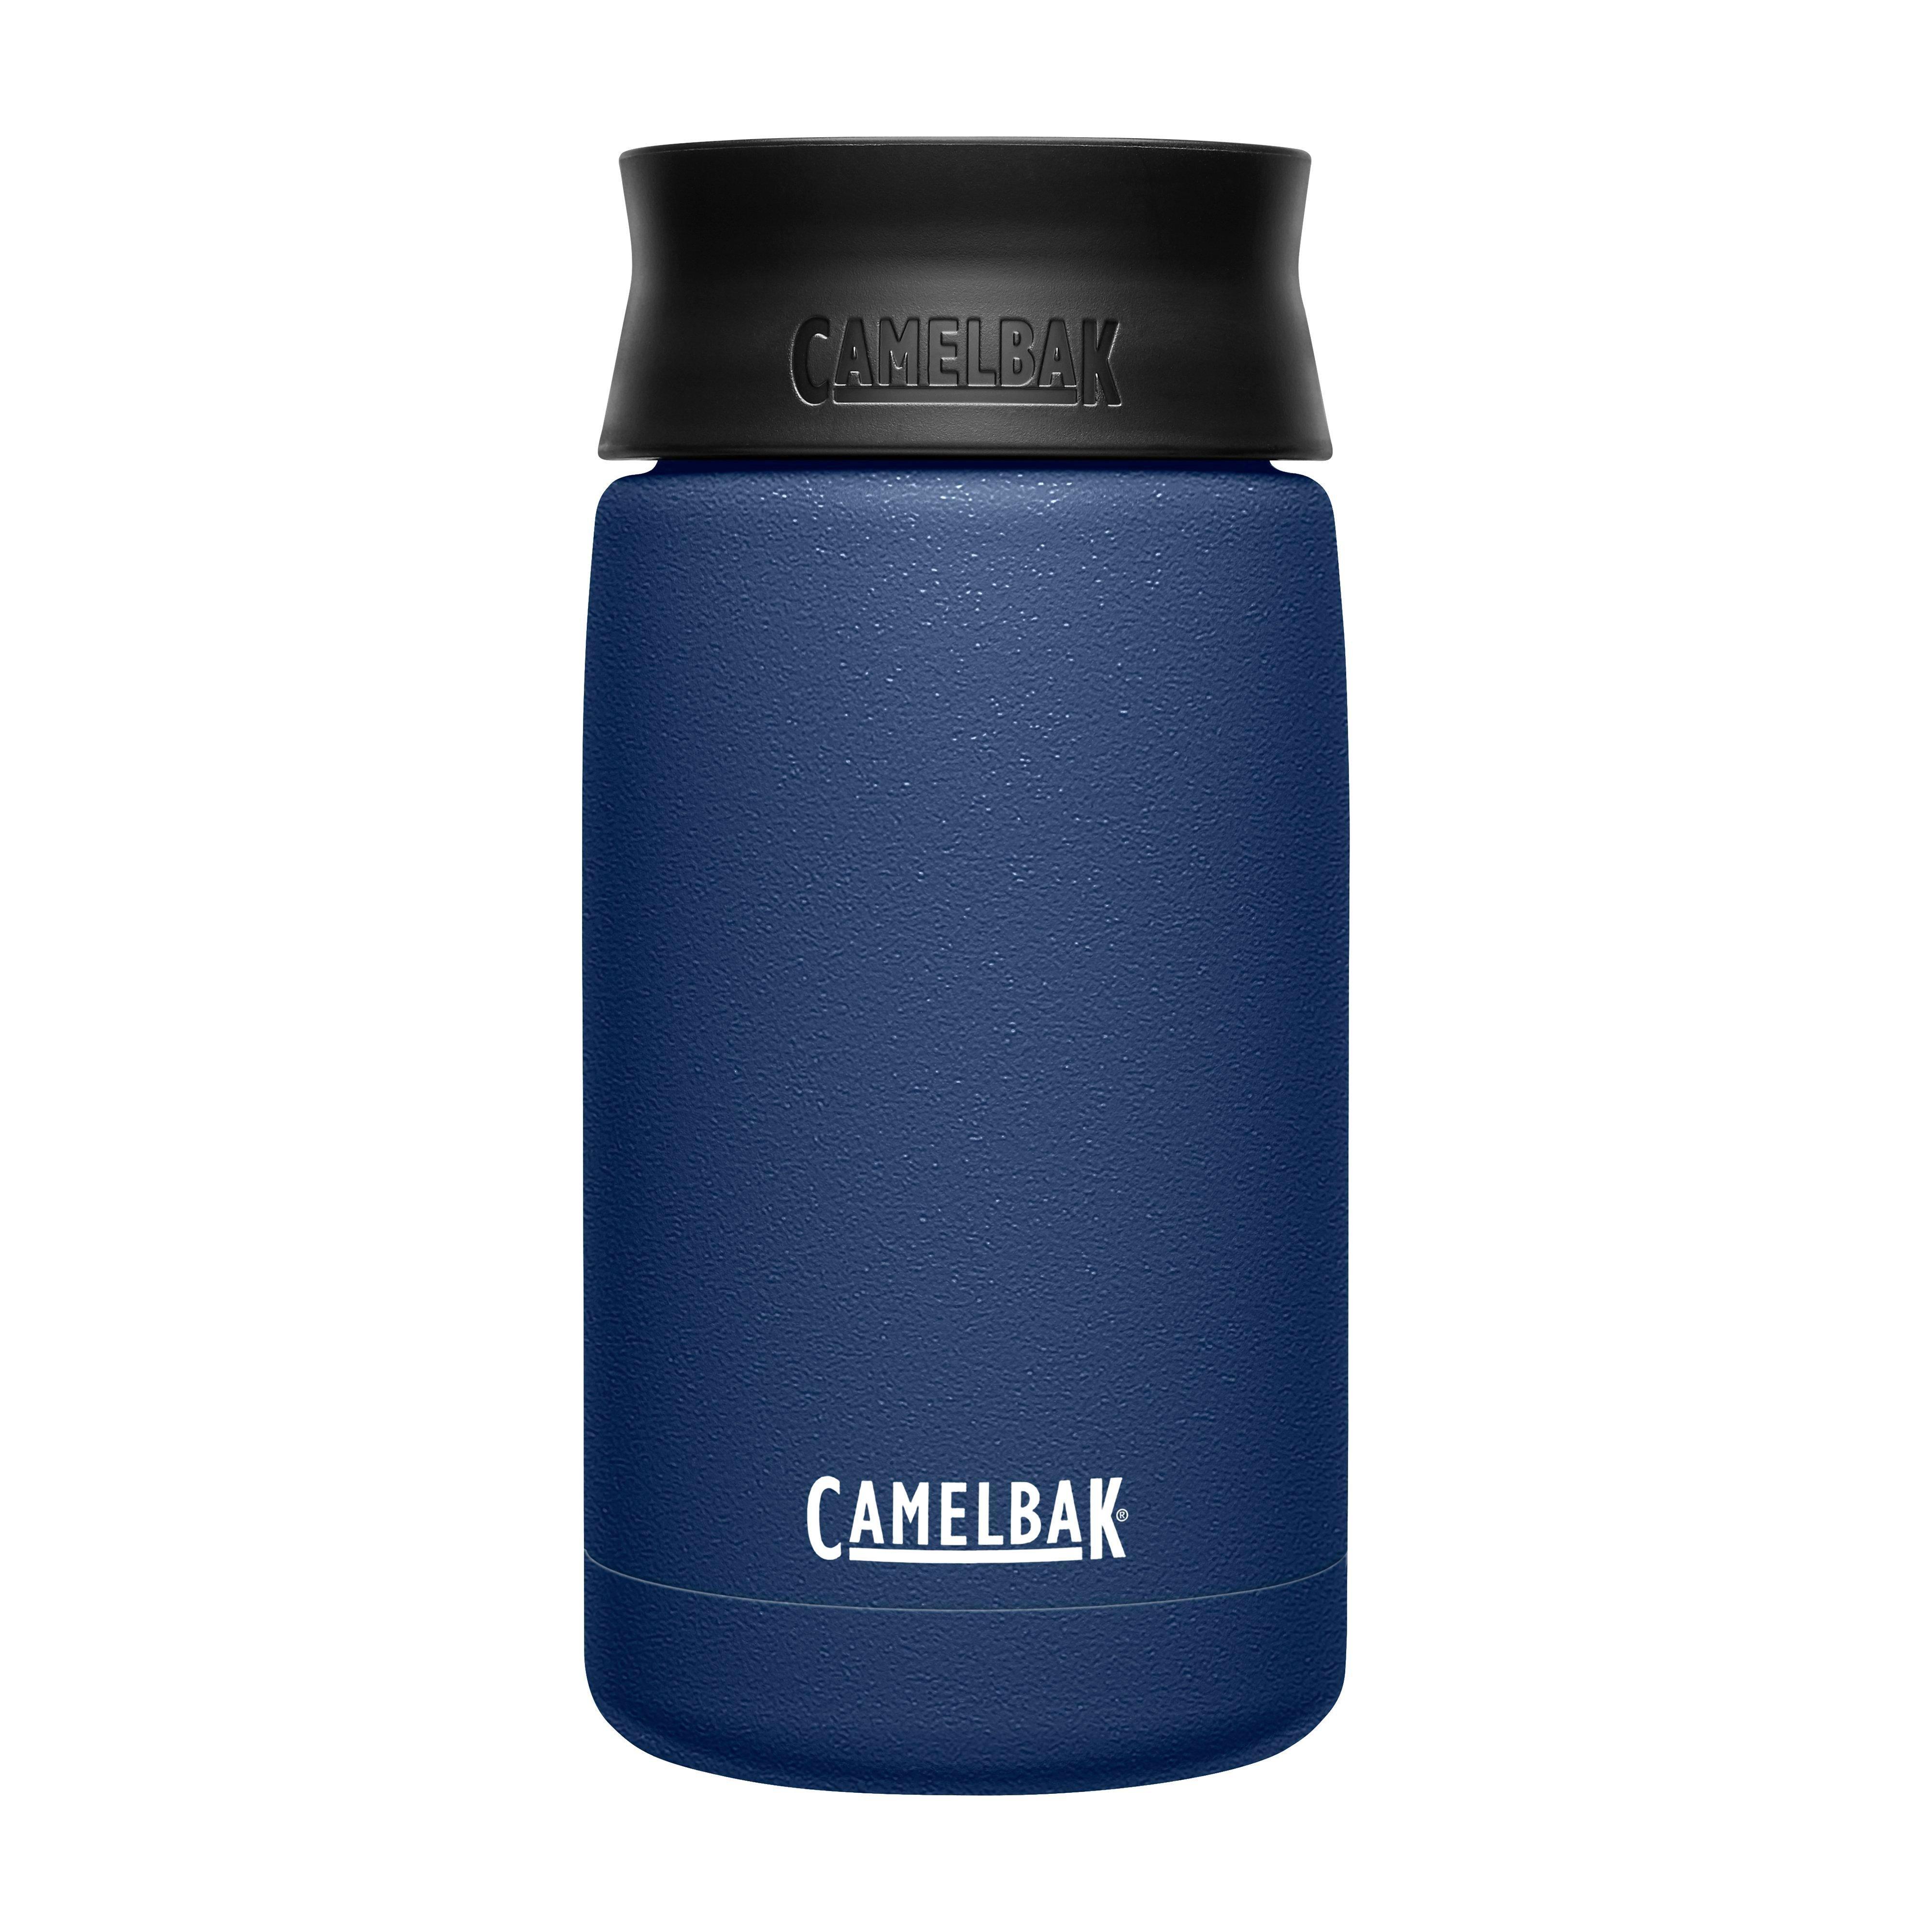 Camelbak Hot Cap Vacuum 350ml Review